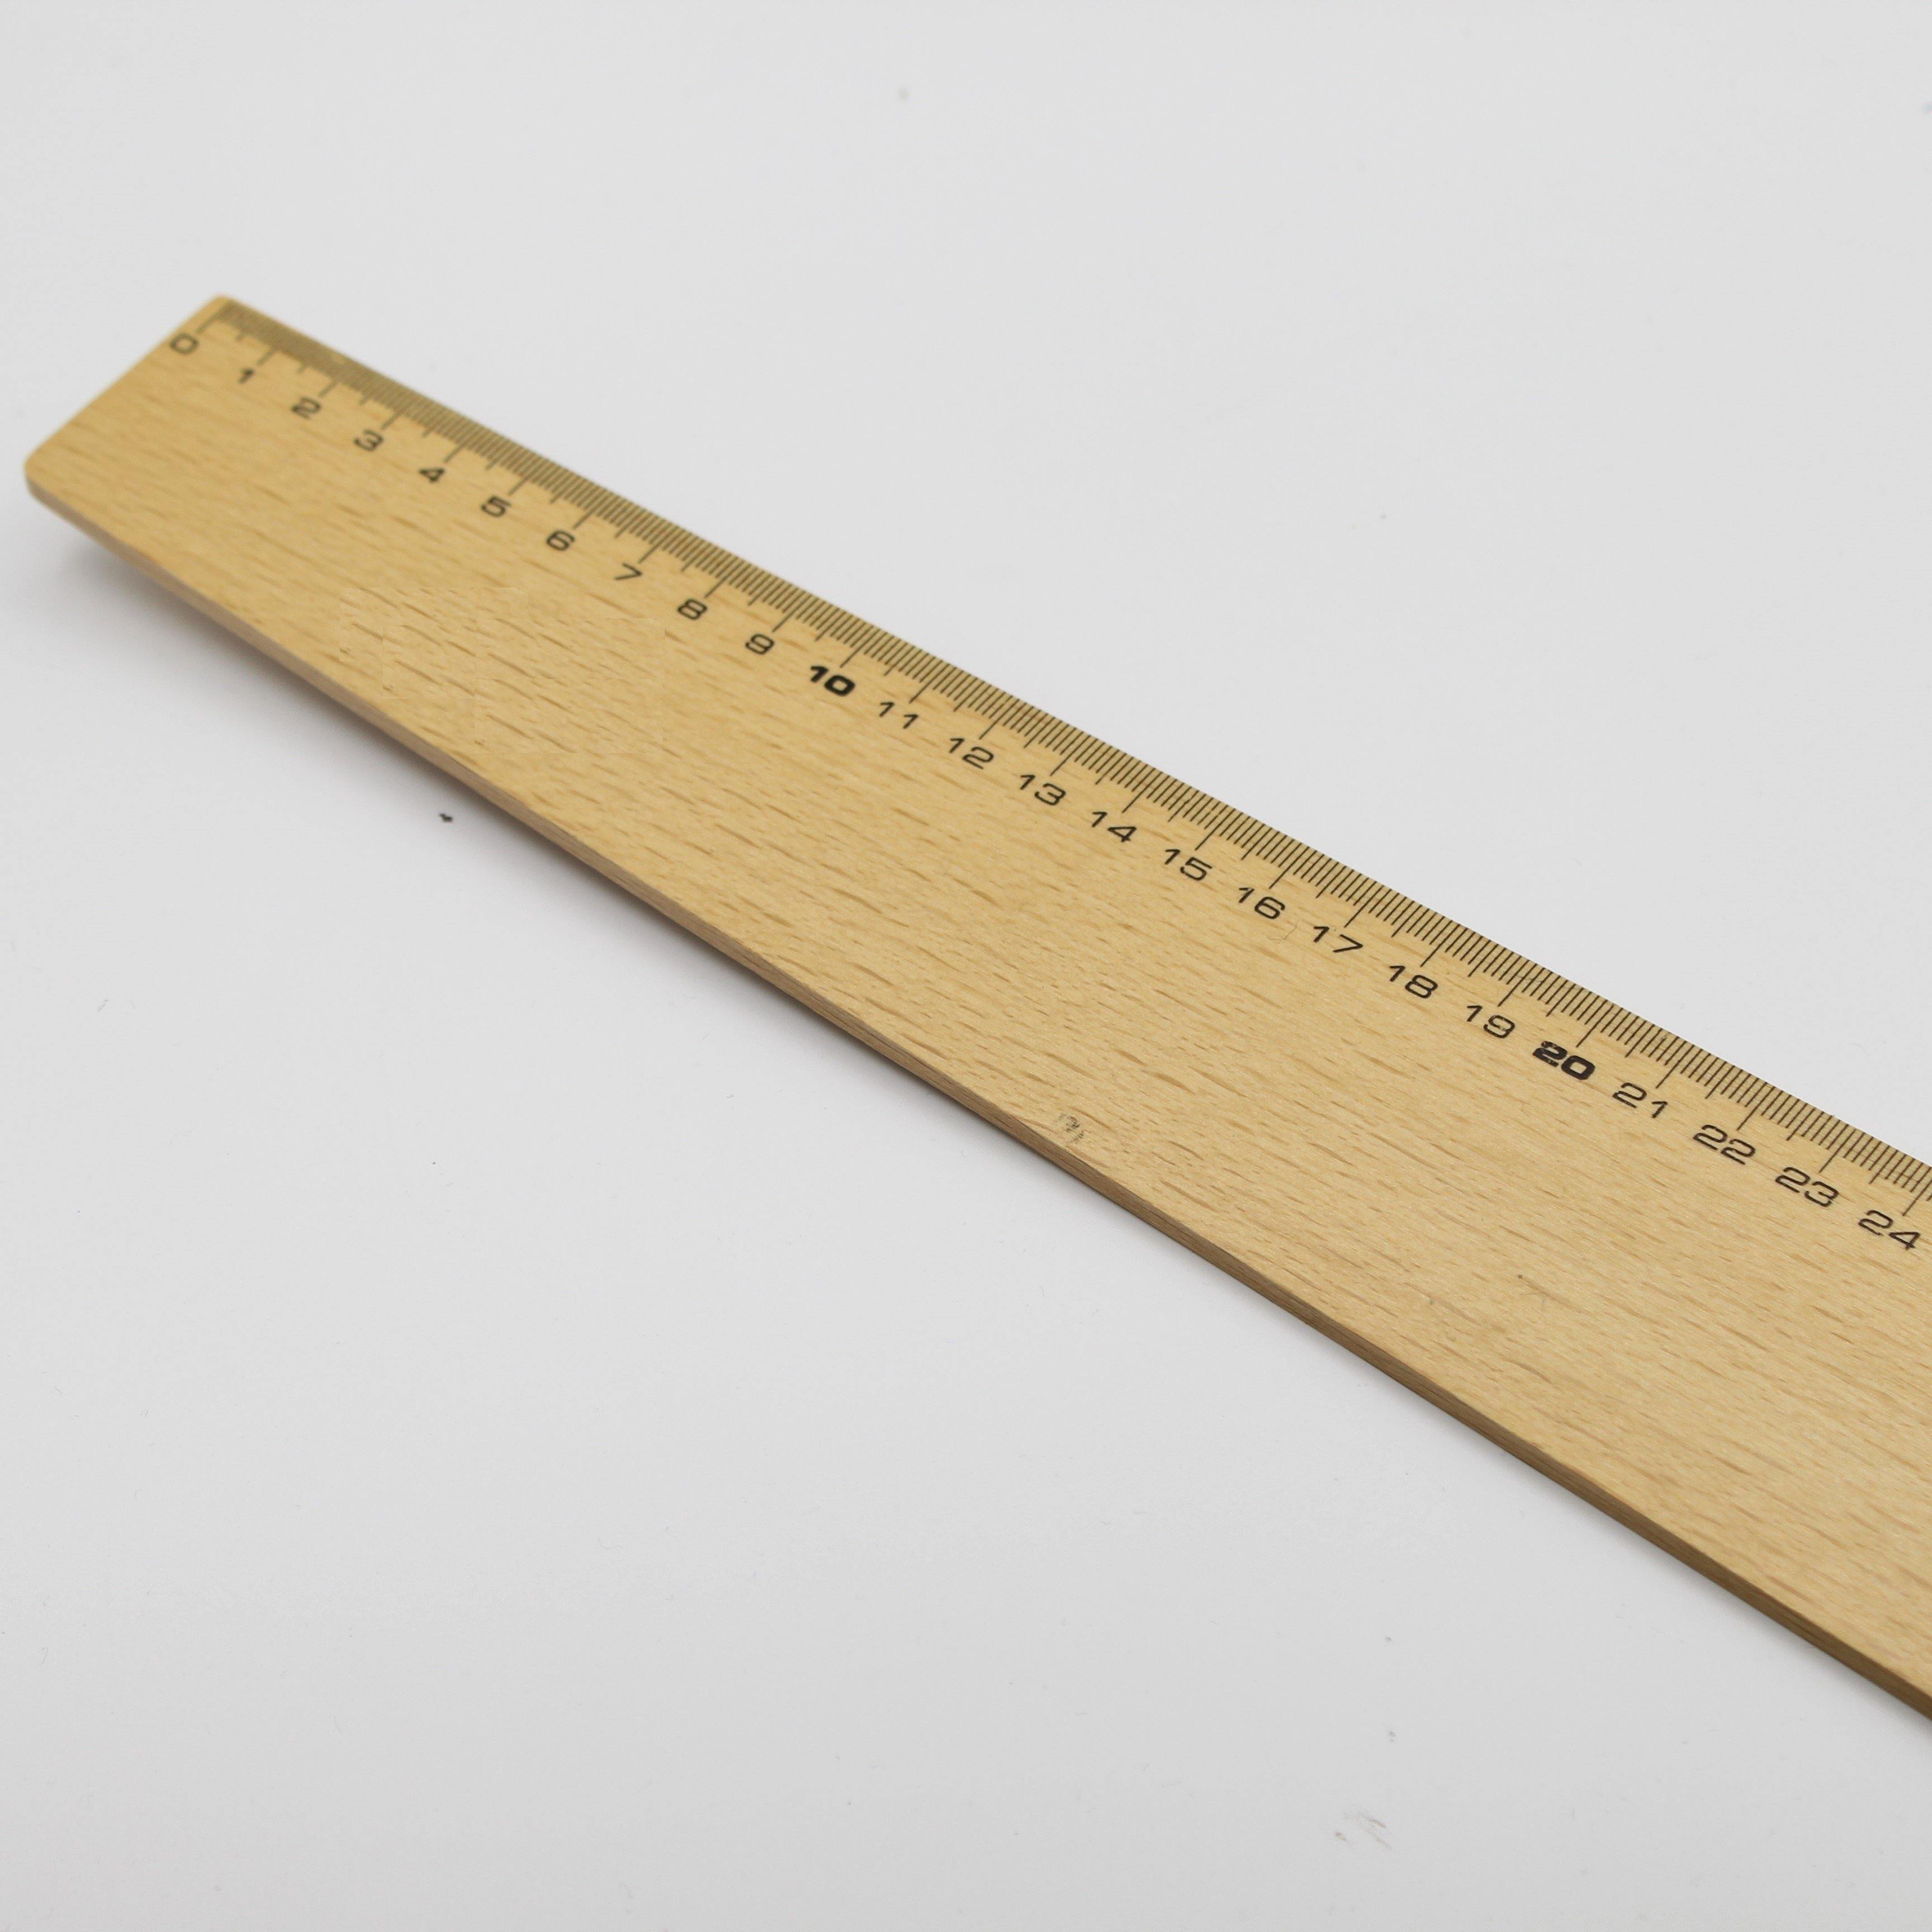 règle en bois avec marquage en cm, pouces et degrés (grand